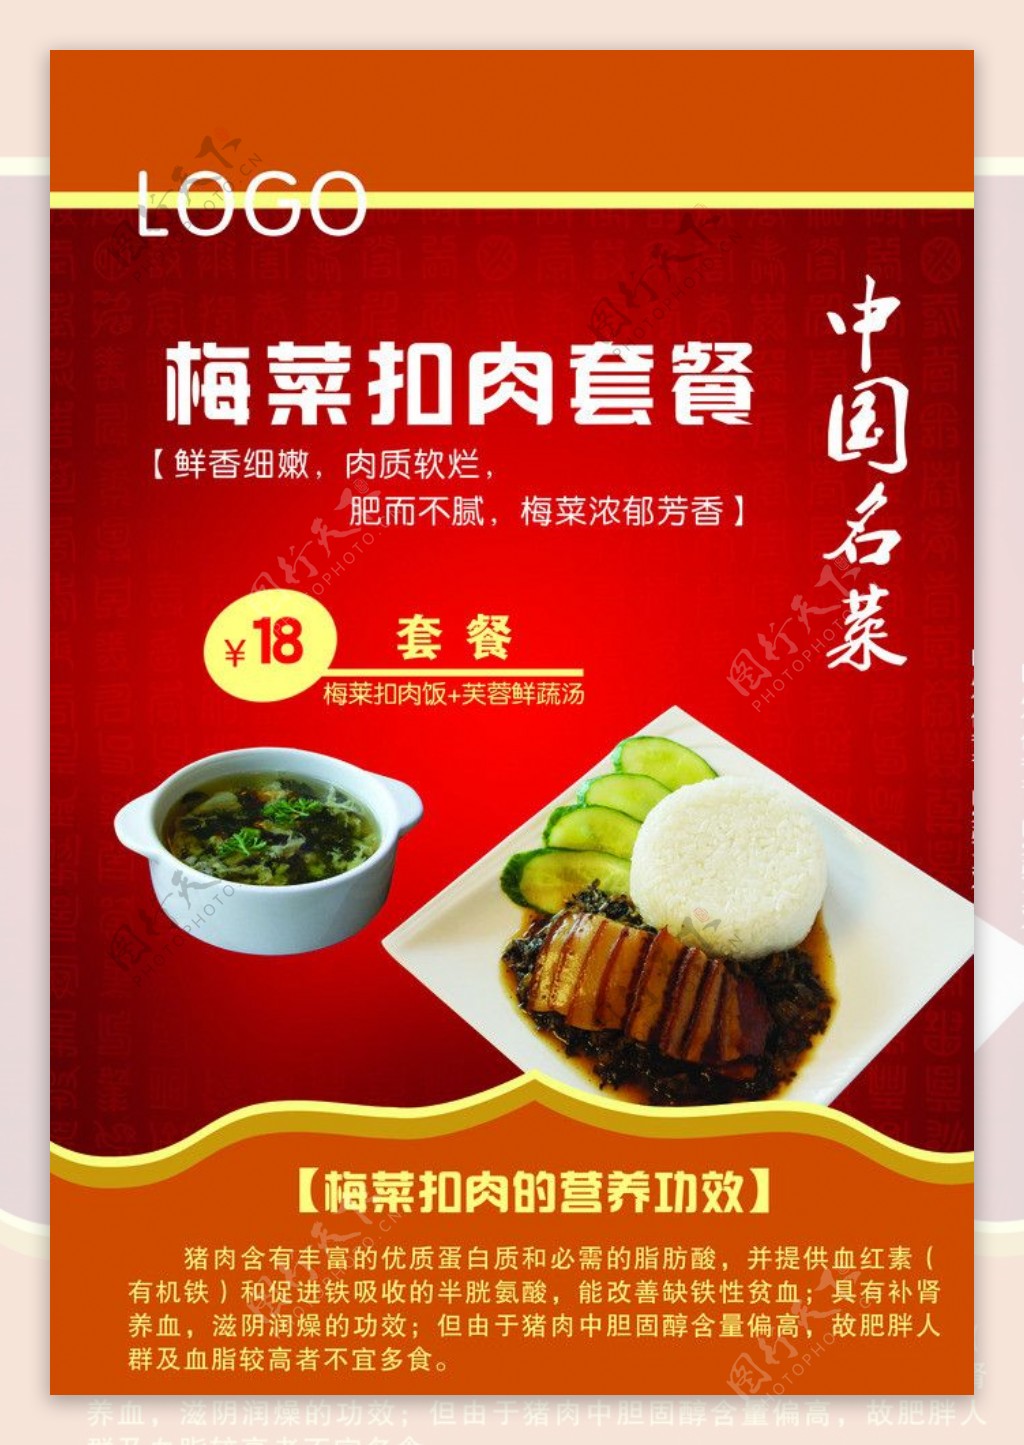 梅菜扣肉套餐宣传彩页图片